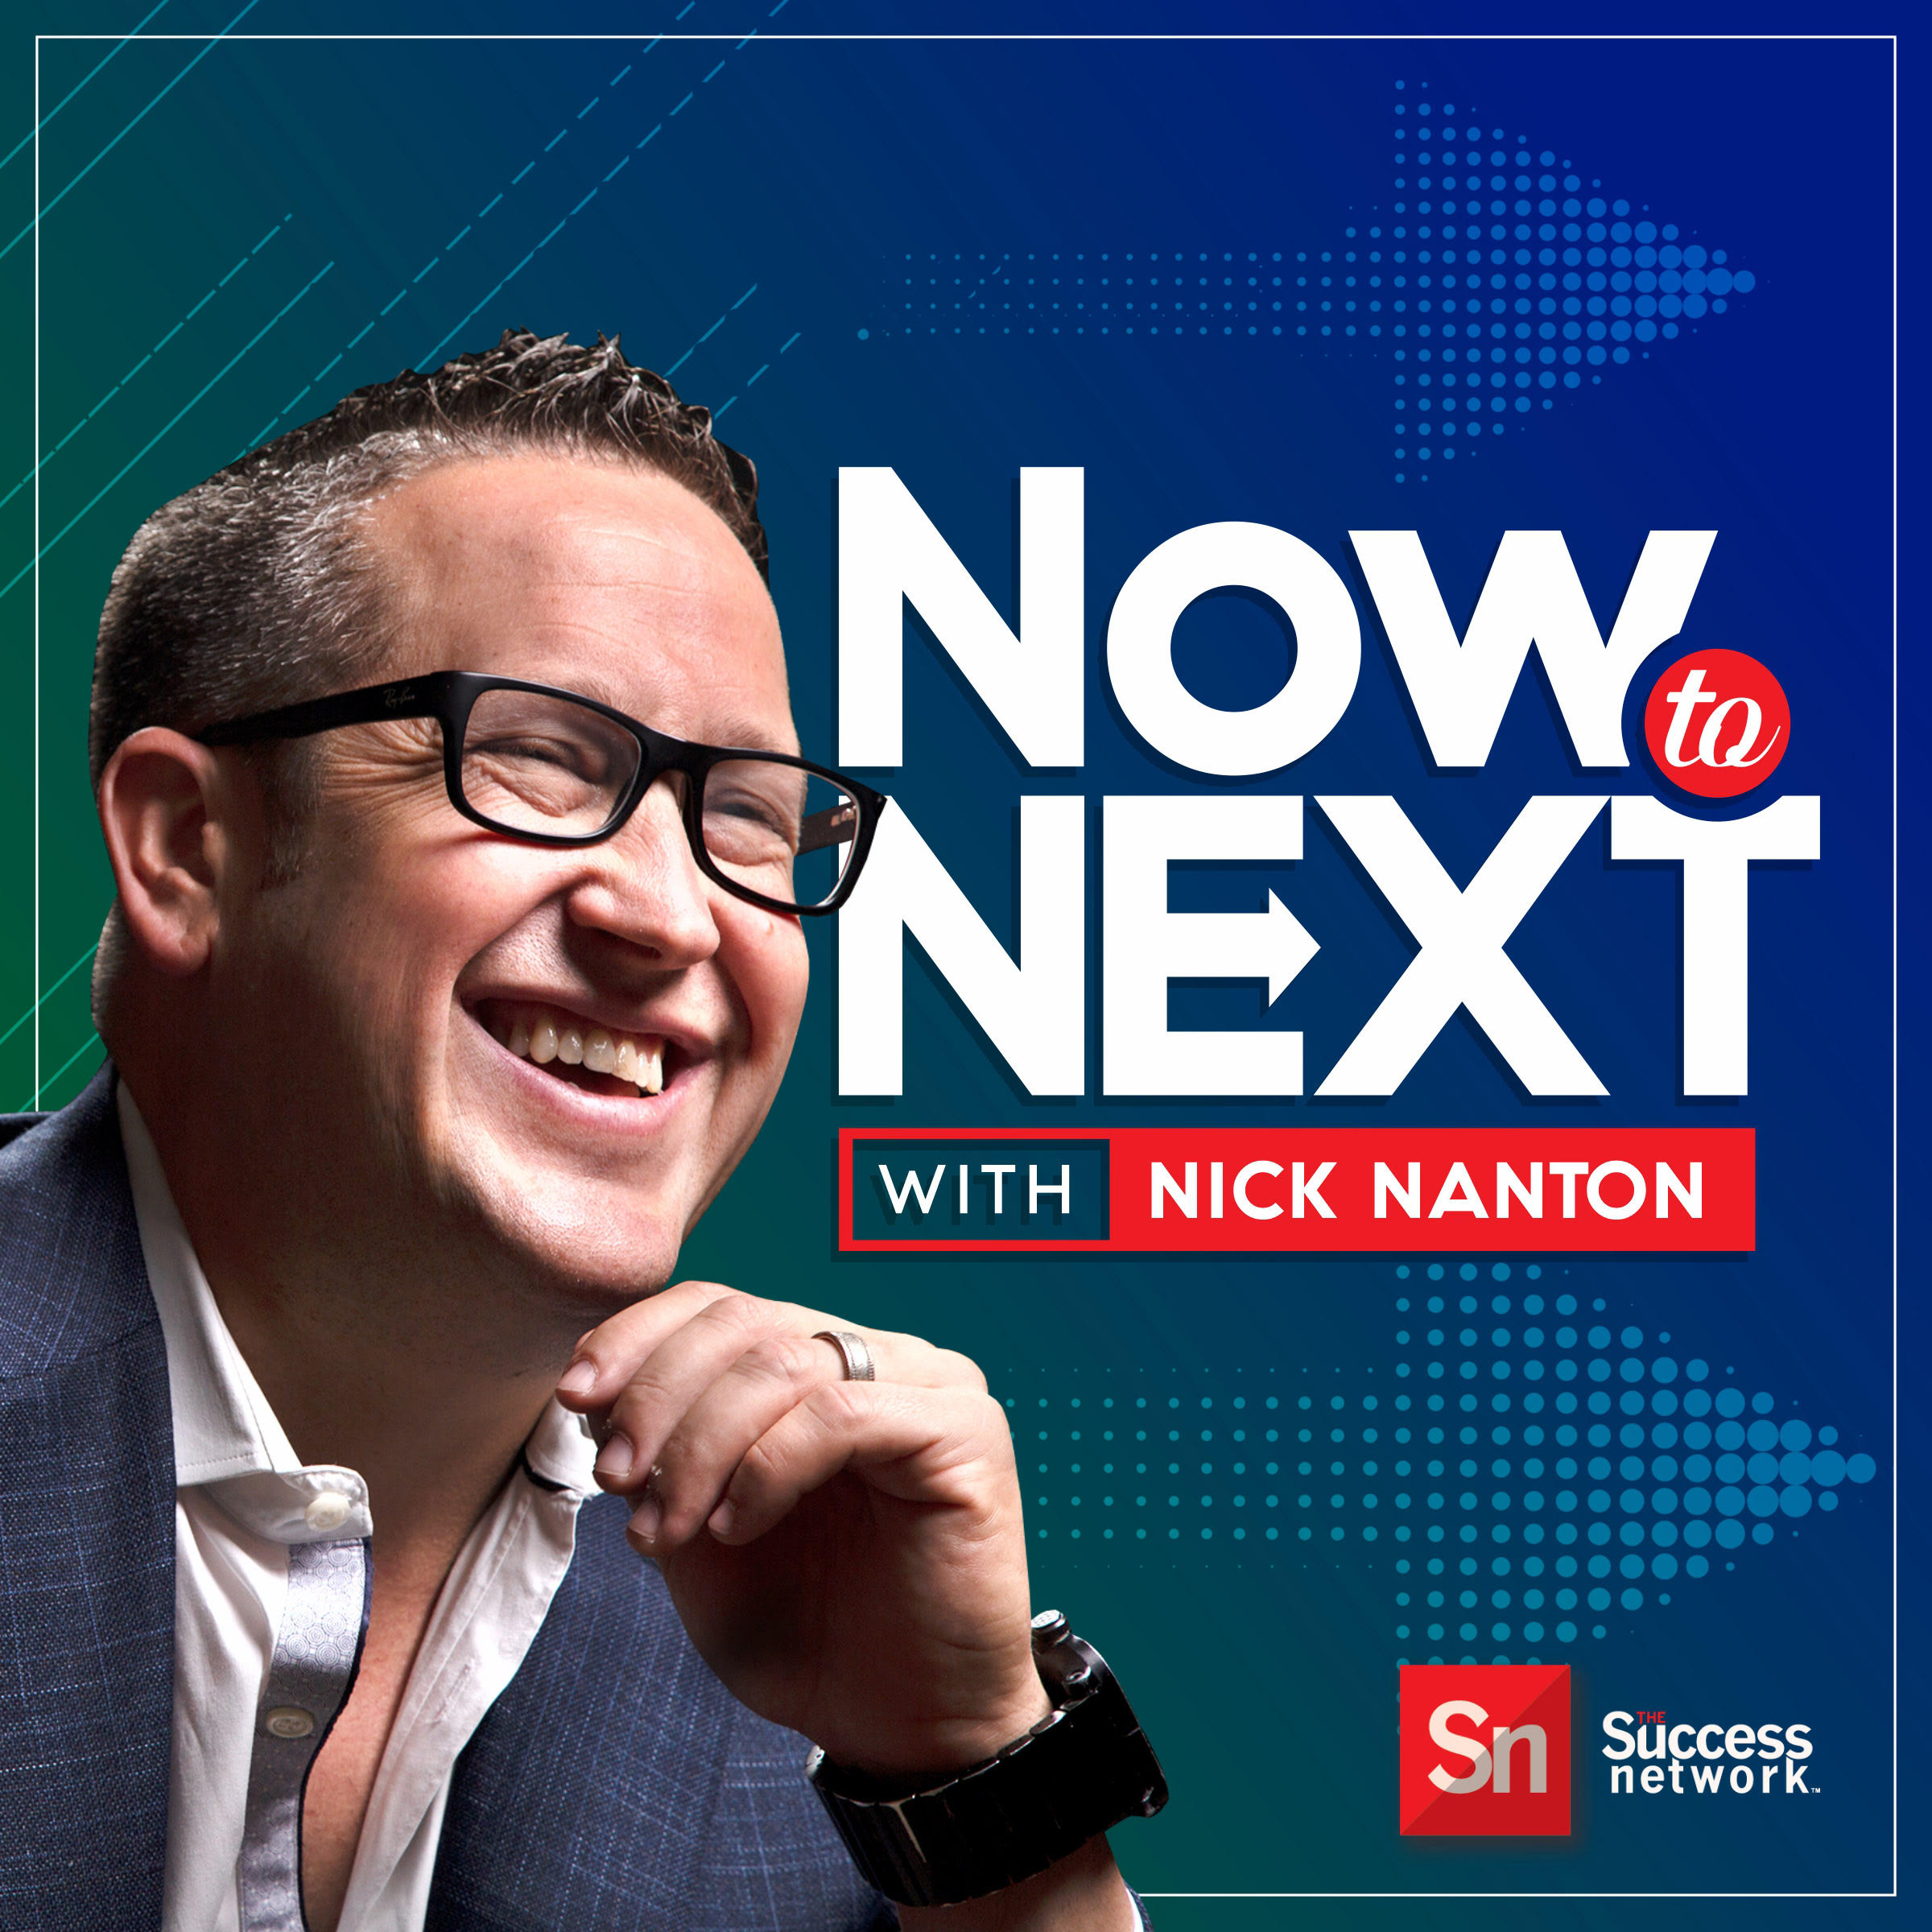 Now to Next with Nick Nanton